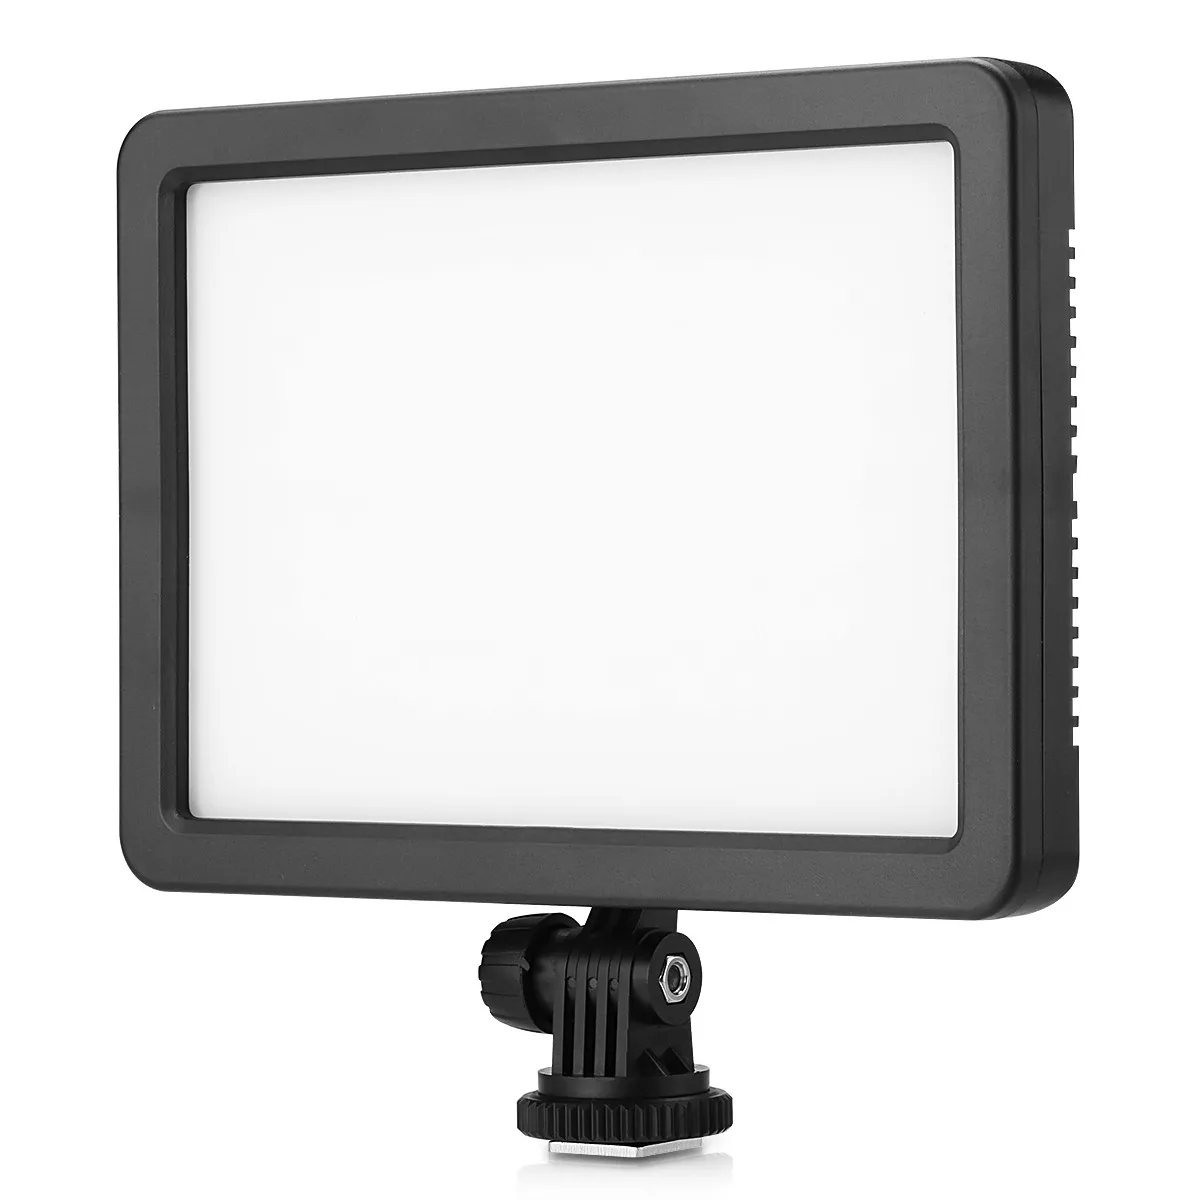 Excelvan PT-308S 308 шт. светодиодный видео свет 5600 K портативный ультра-тонкий Диммируемый на камеру легкий коврик для всех цифровых камер s - Цвет: Light